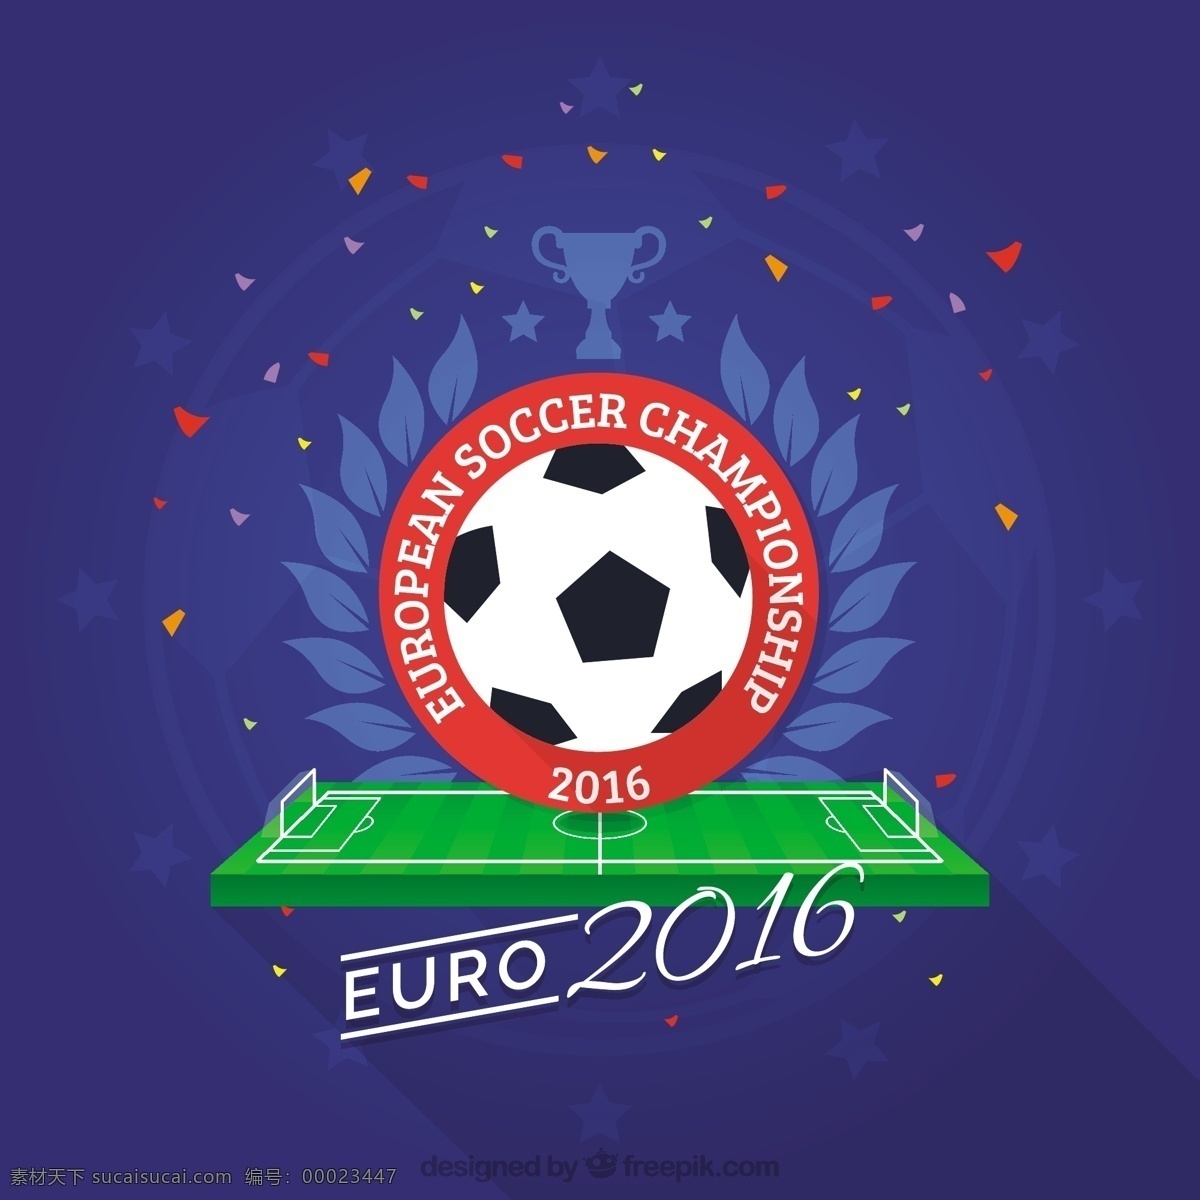 五彩 纸屑 2016 欧元 背景 可爱 球 足球 体育 健身 团队 运动 训练 欧洲 法国的背景下 冠军 足球比赛